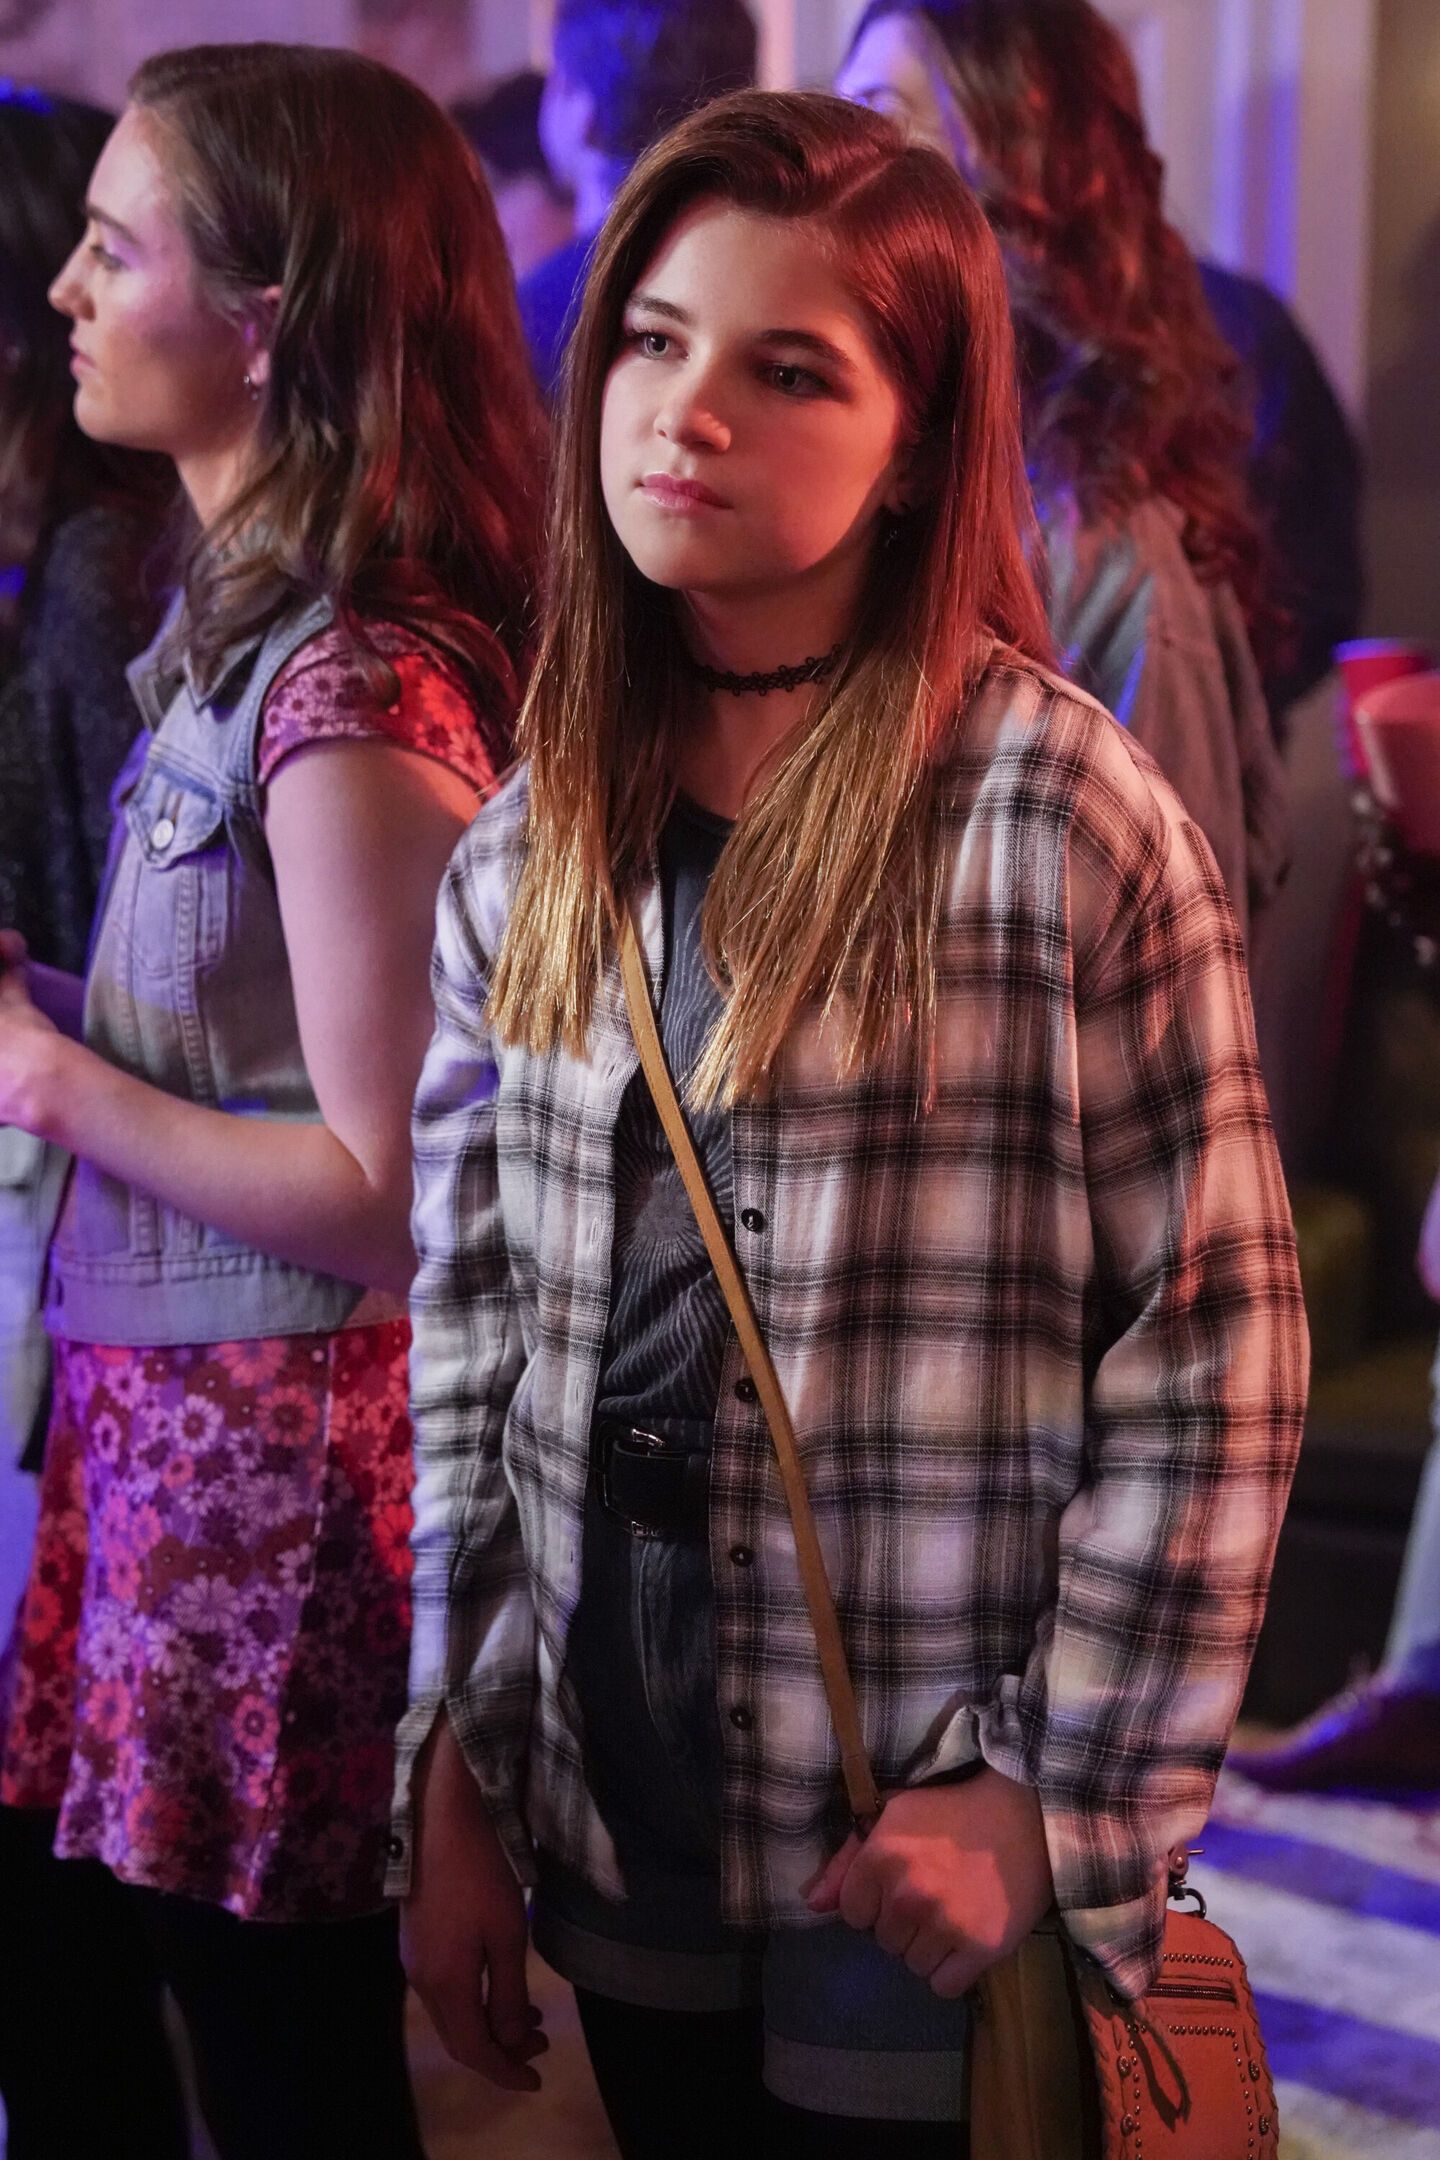 Missy parece desafiadora em uma festa no episódio 13 da 6ª temporada de Young Sheldon